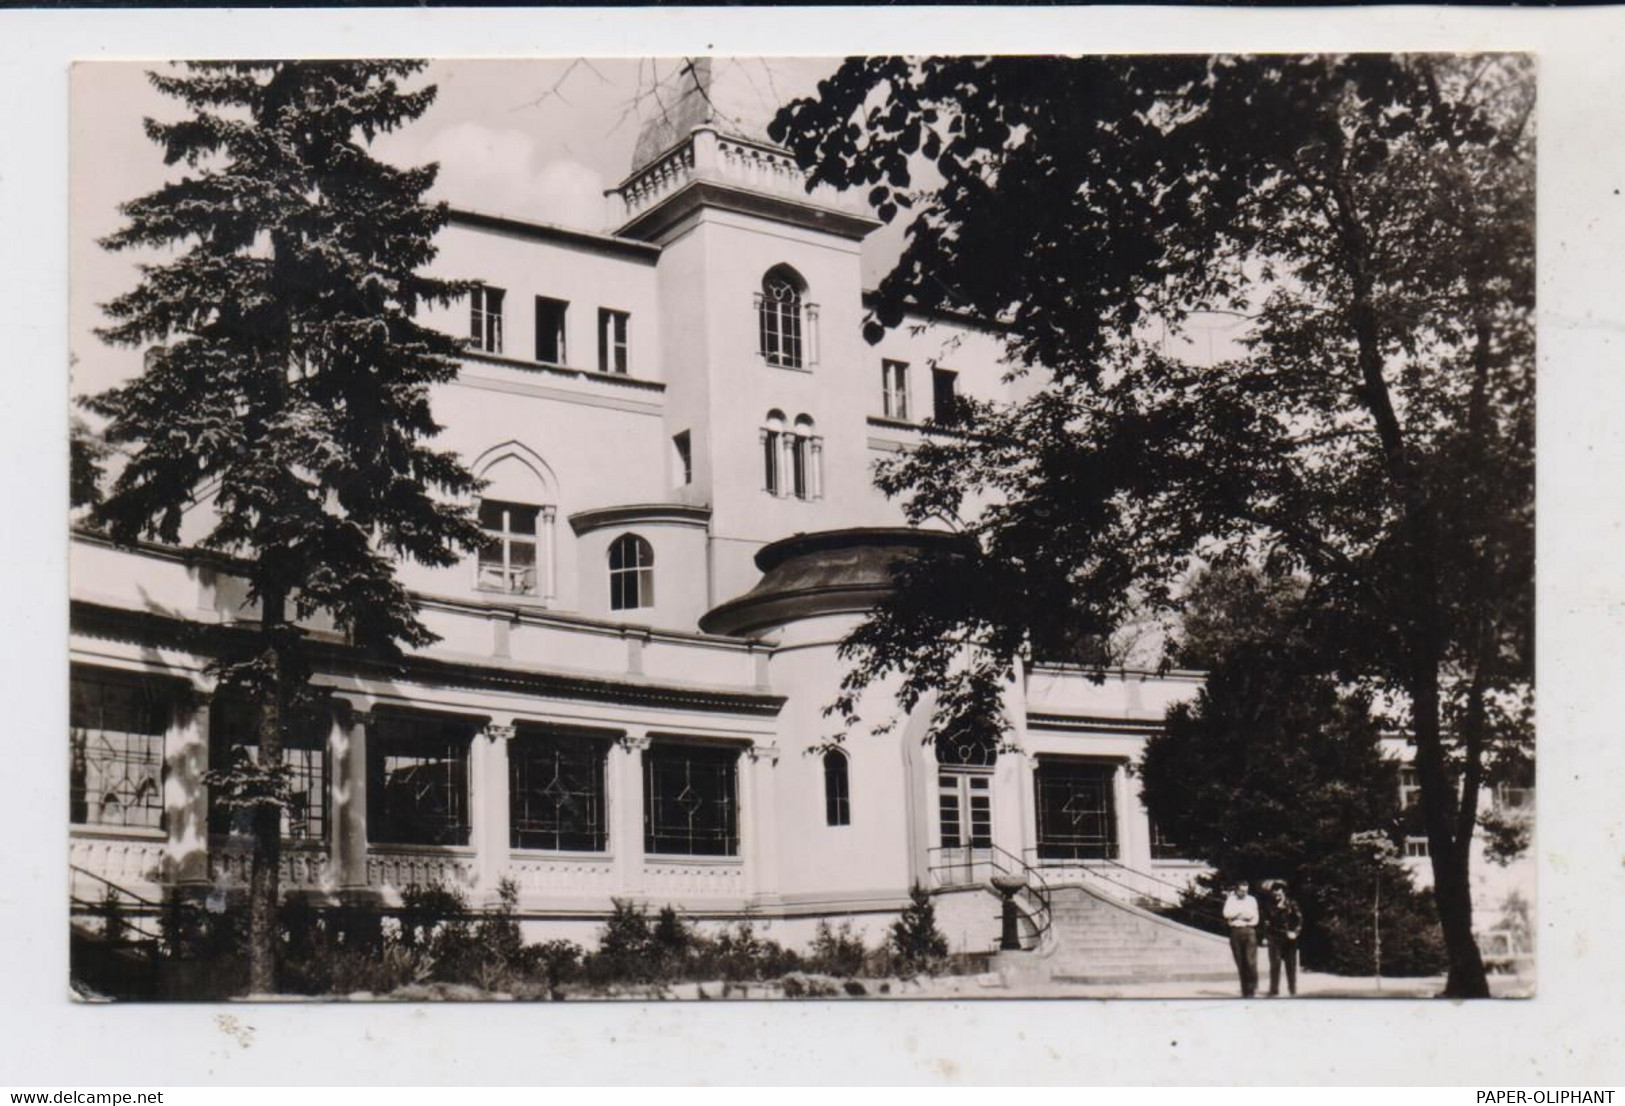 0-1403 BIRKENWERDER, Orthopädisches Krankenhaus, 1961 - Birkenwerder